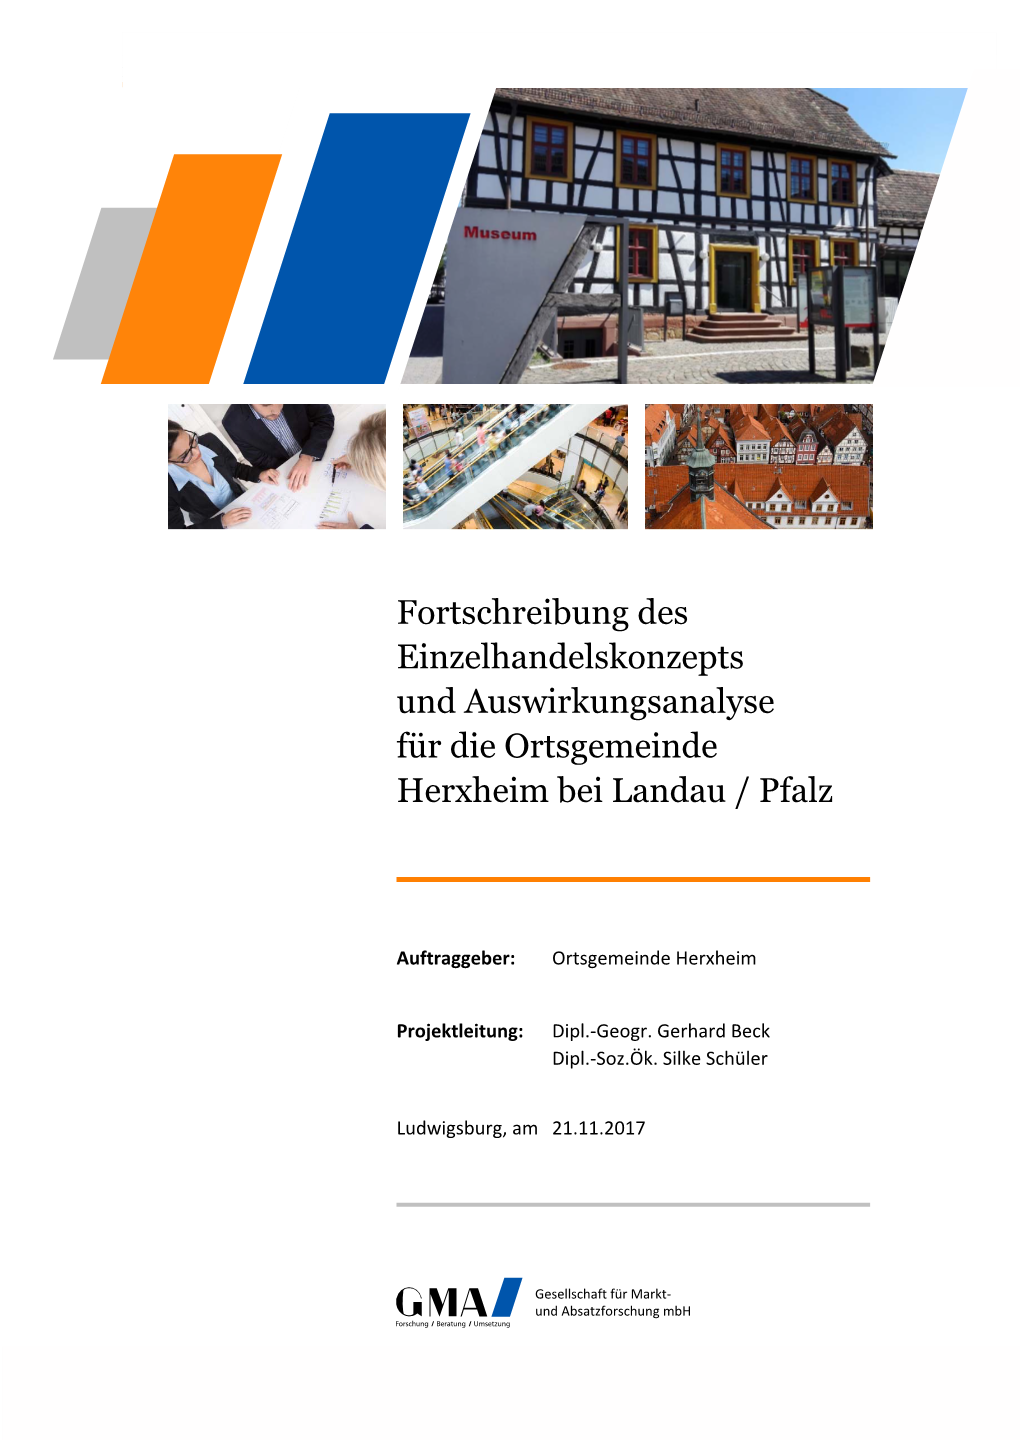 Fortschreibung Des Einzelhandelskonzepts Und Auswirkungsanalyse Für Die Ortsgemeinde Herxheim Bei Landau / Pfalz